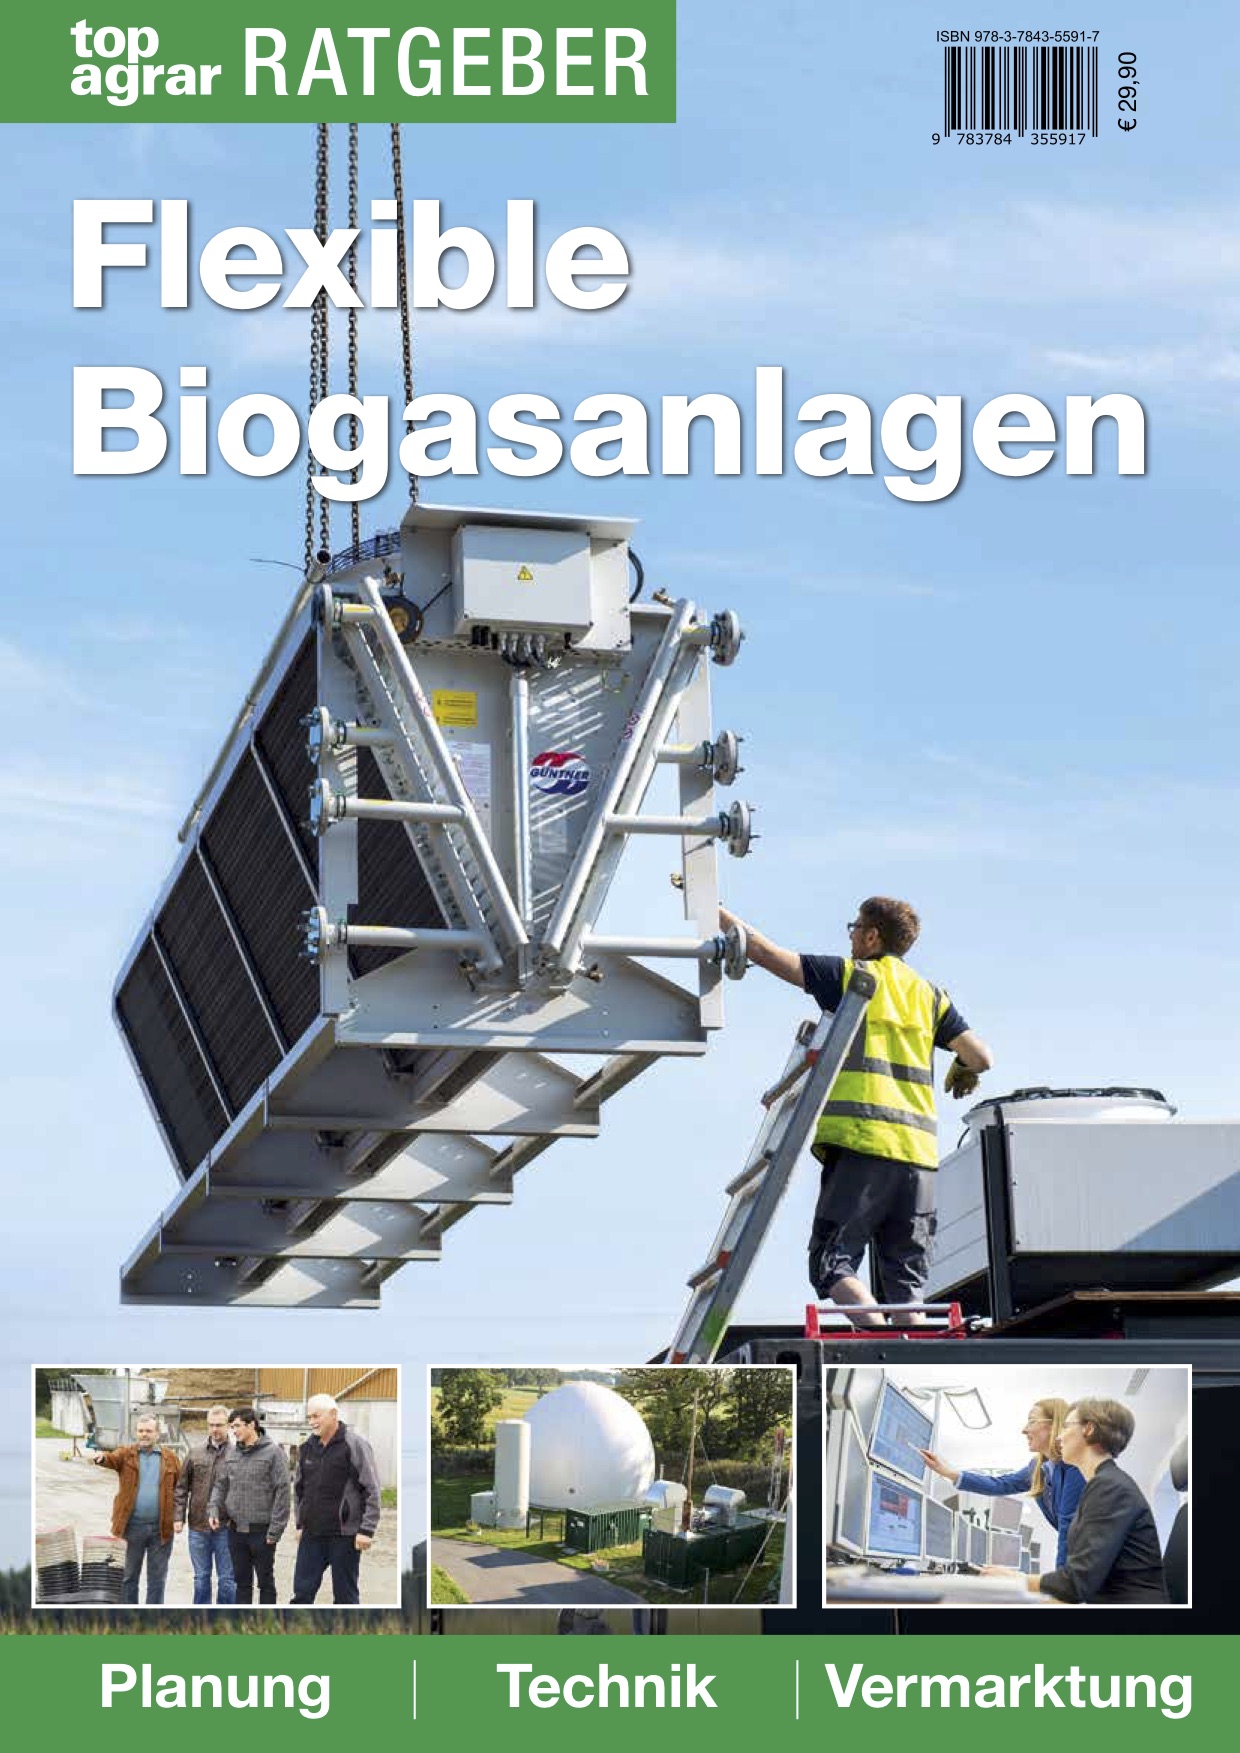 Ratgeber „Flexible Biogasanlagen“